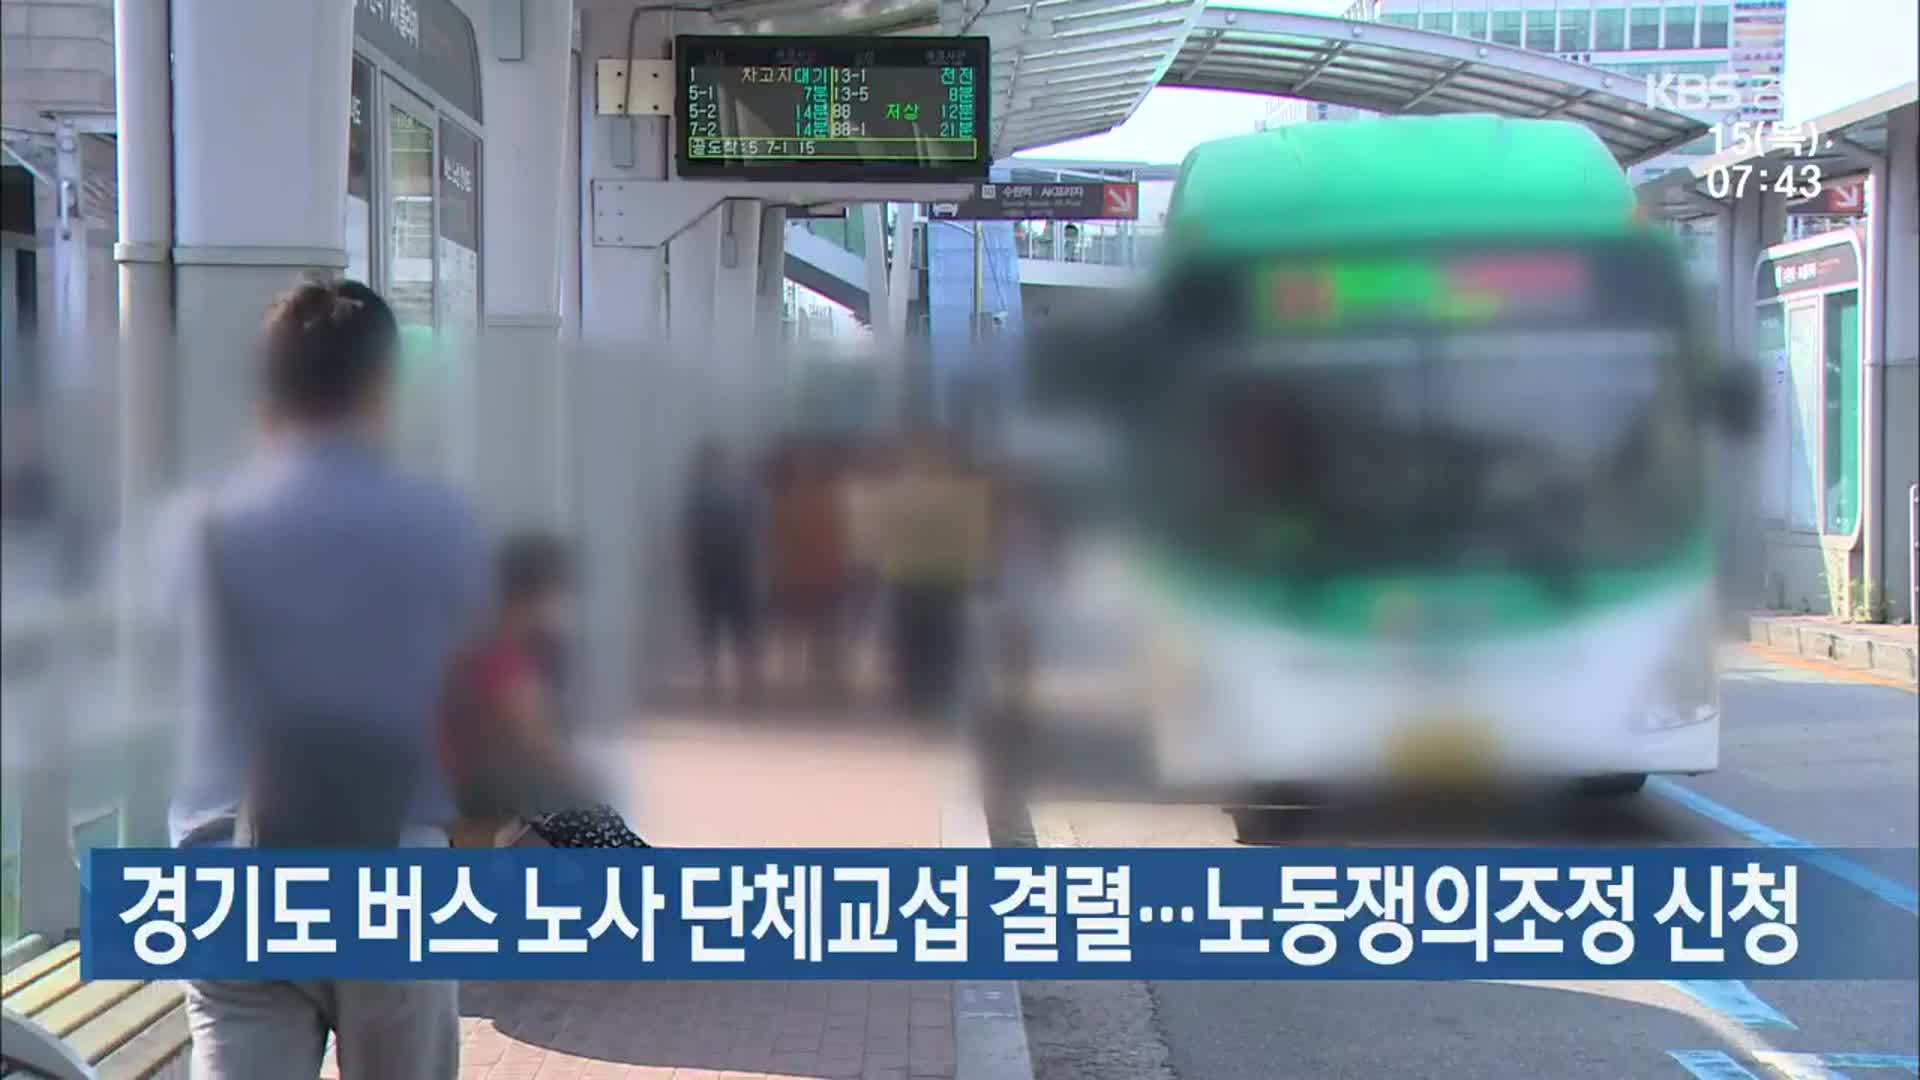 경기도 버스 노사 단체교섭 결렬…노동쟁의조정 신청